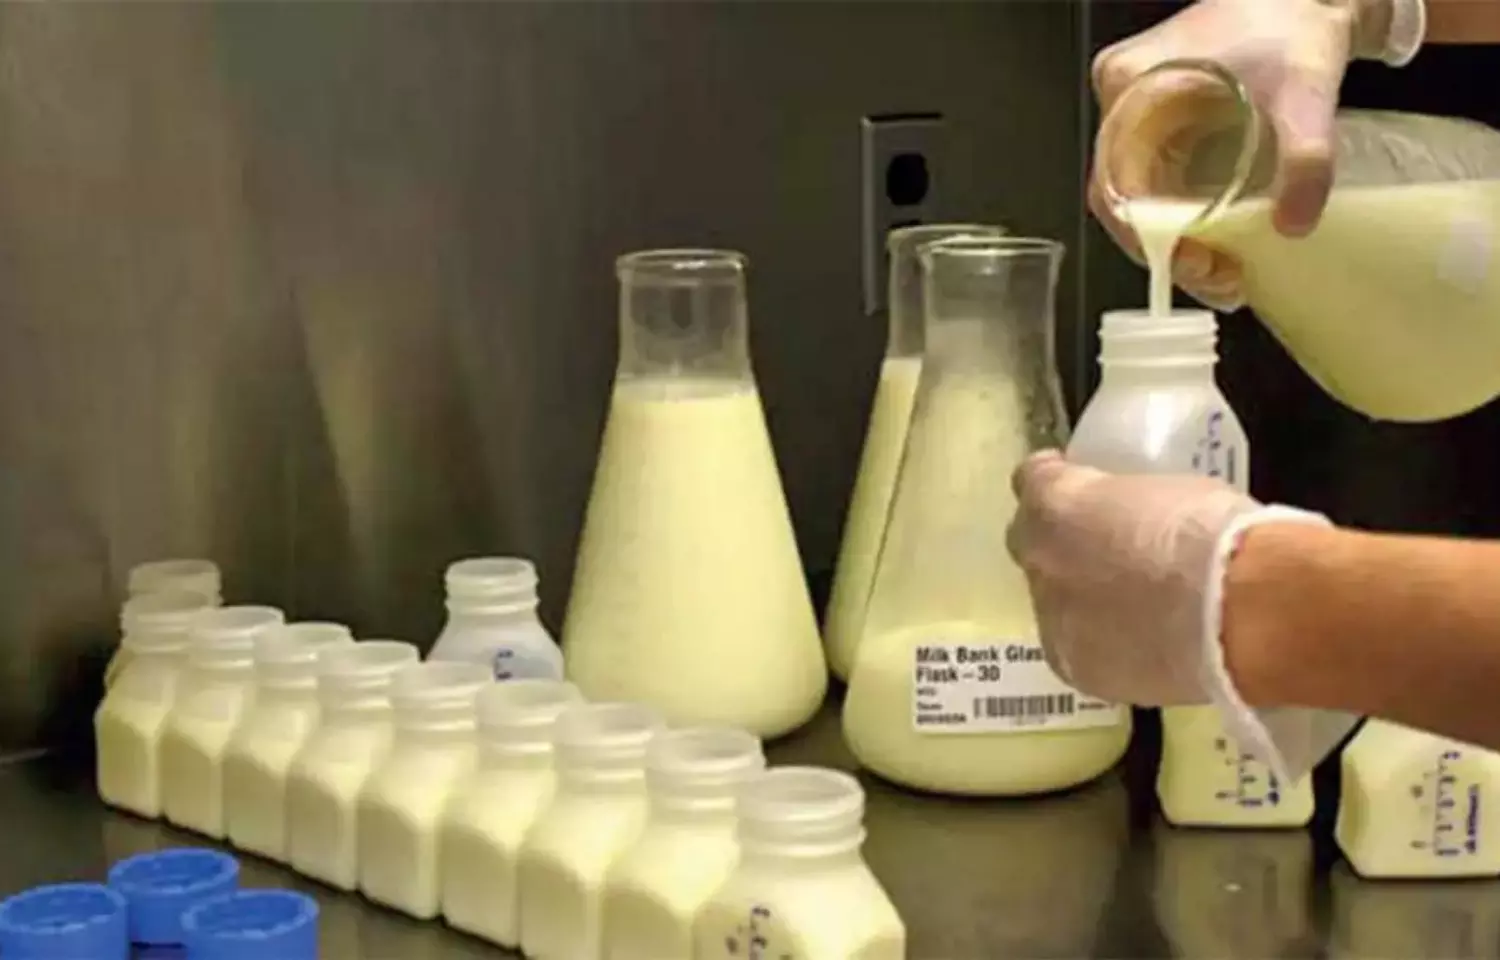 Human milk bank inaugurated at Nashik Civil hospital